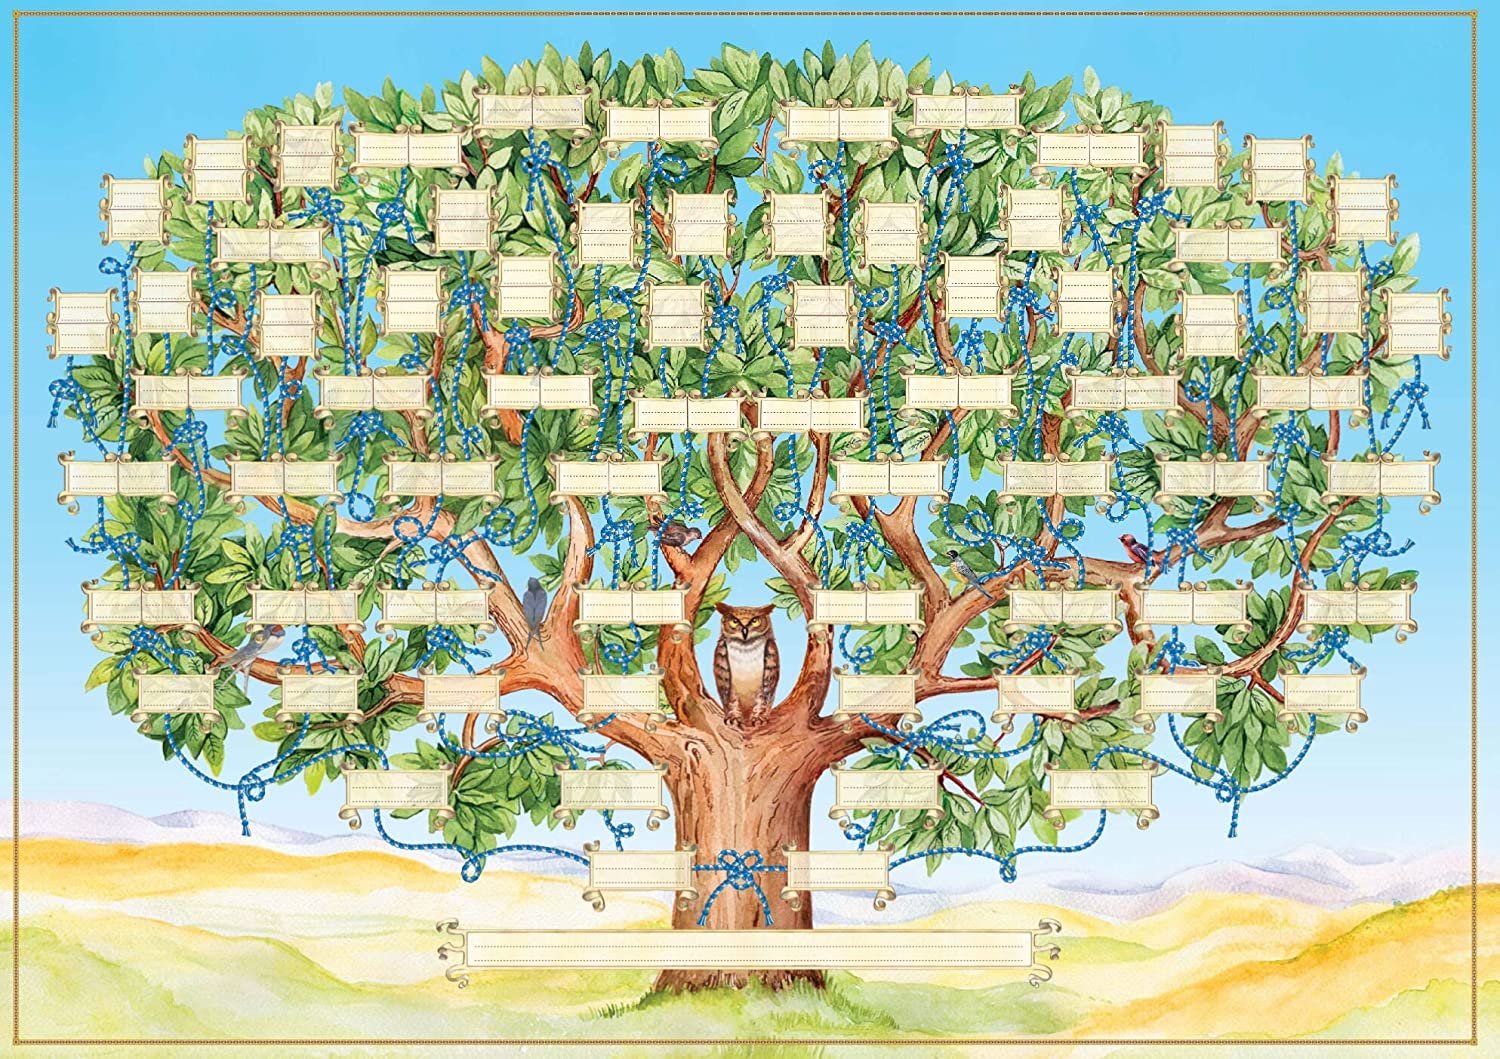 Образец дерева родословного дерева